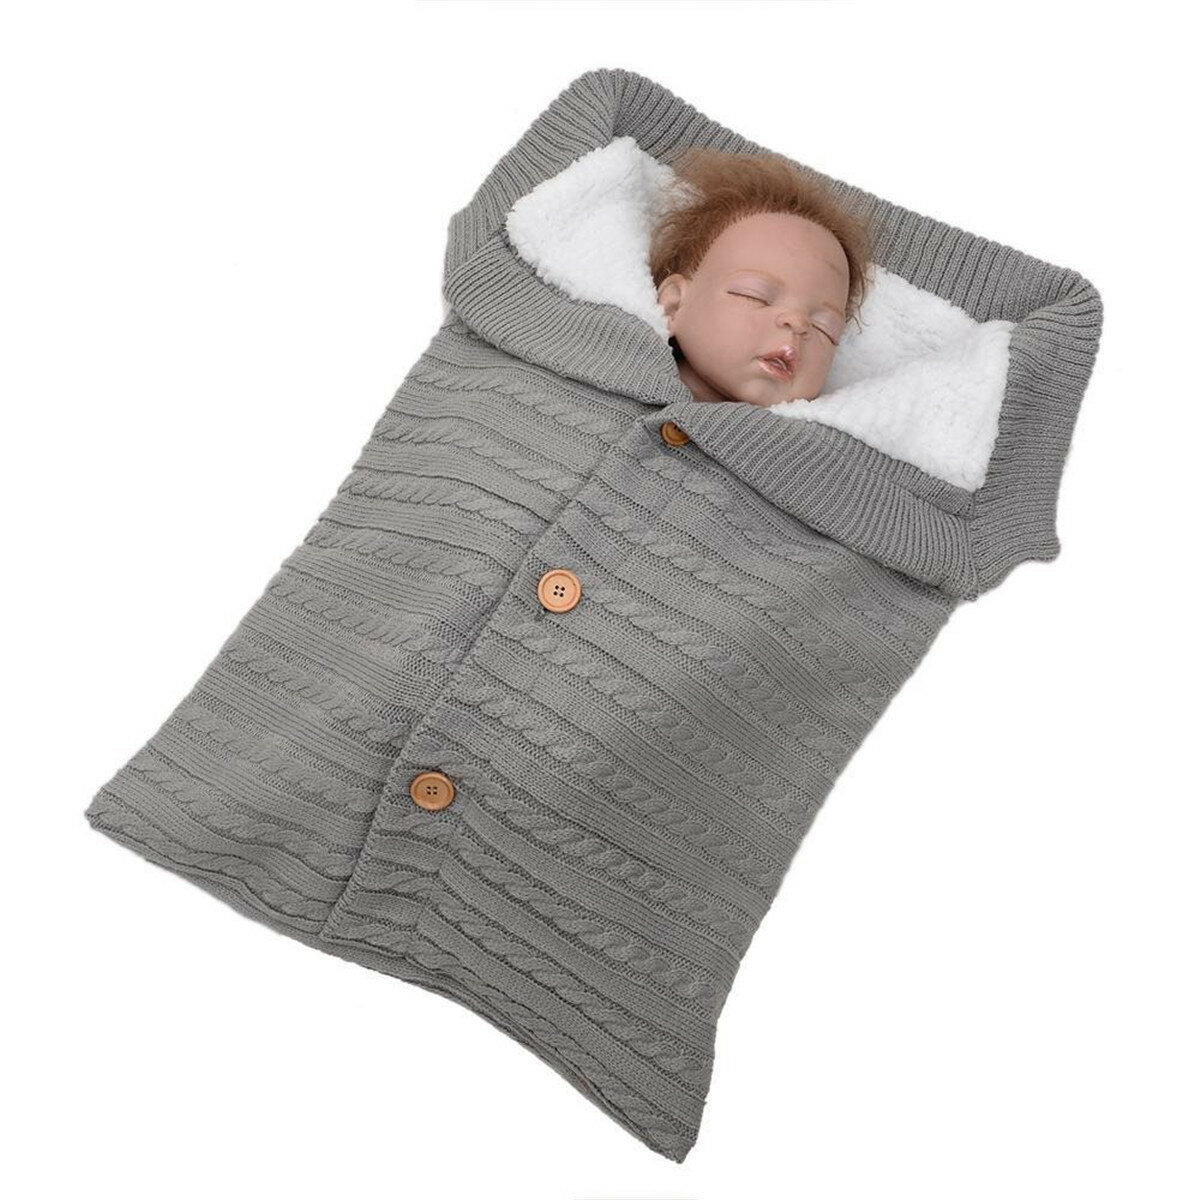 baby pram sleeping bag